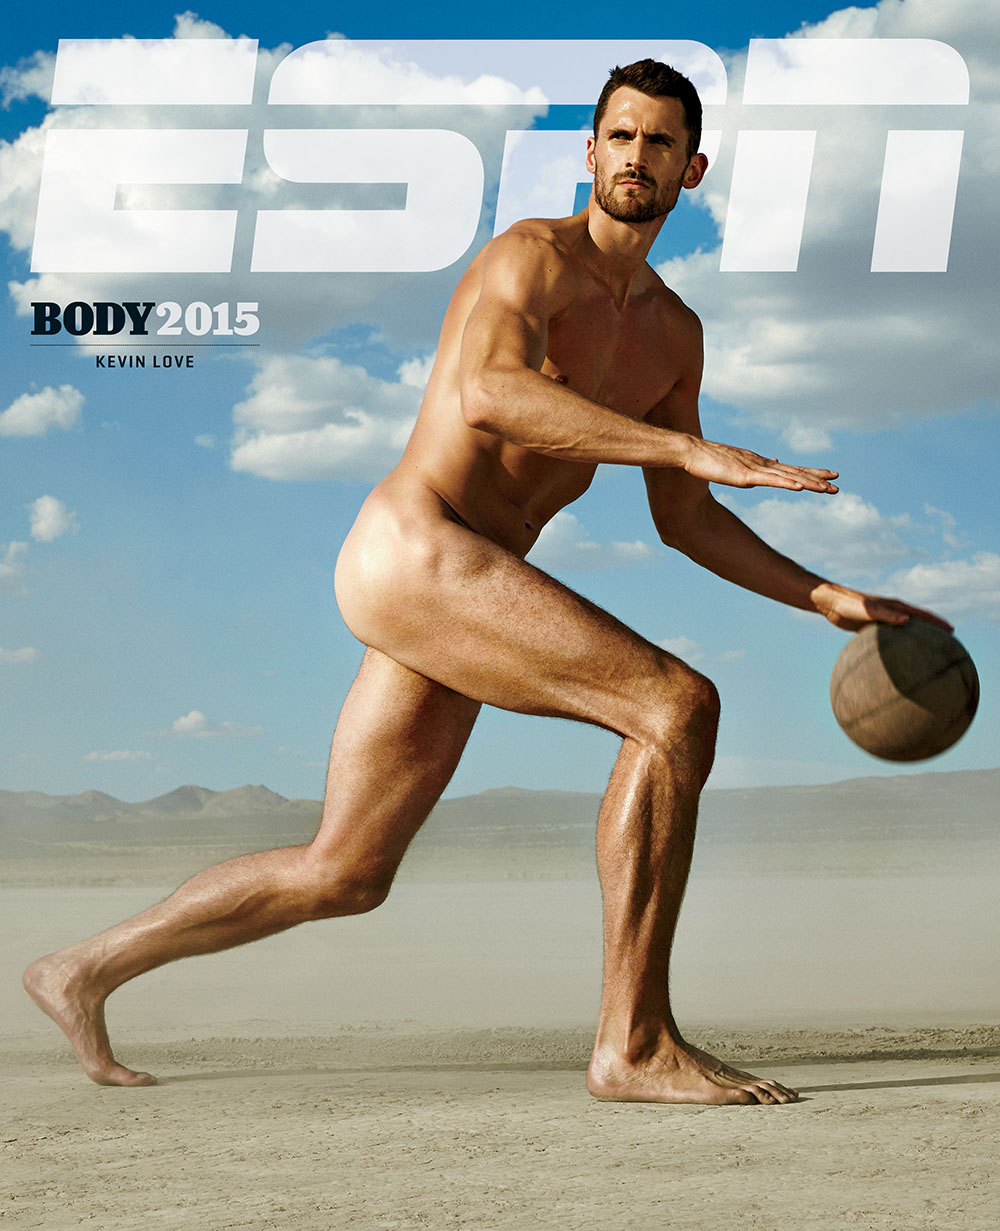 Noticias de fotografía: impresionantes desnudos deportivos de ESPN Kevin Love fotografiados por Richard Phibbs